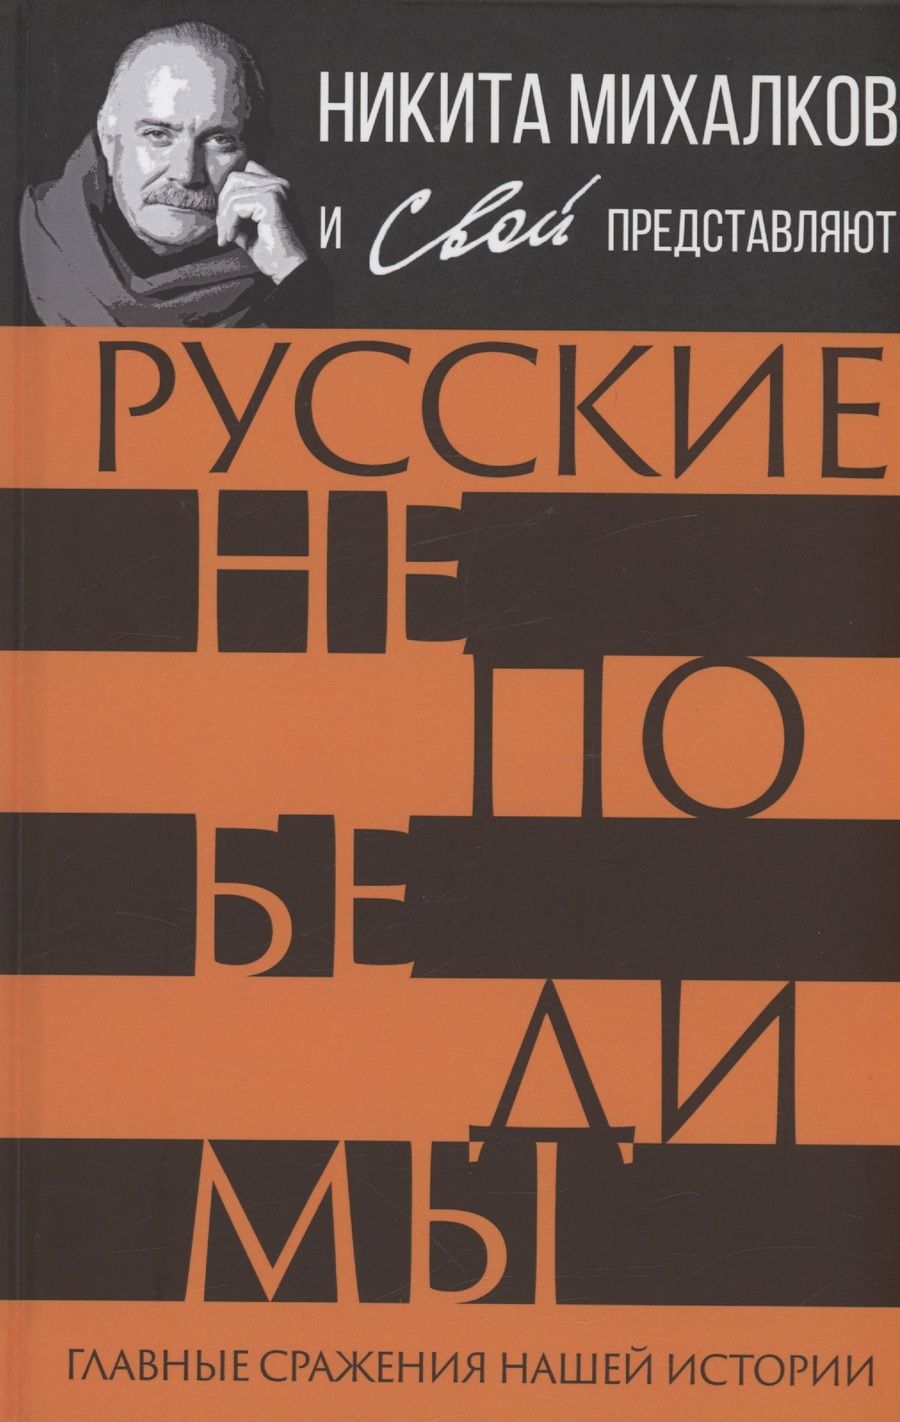 Обложка книги "Громов, Шамбаров, Тростин: Русские непобедимы. Главные сражения нашей истории"